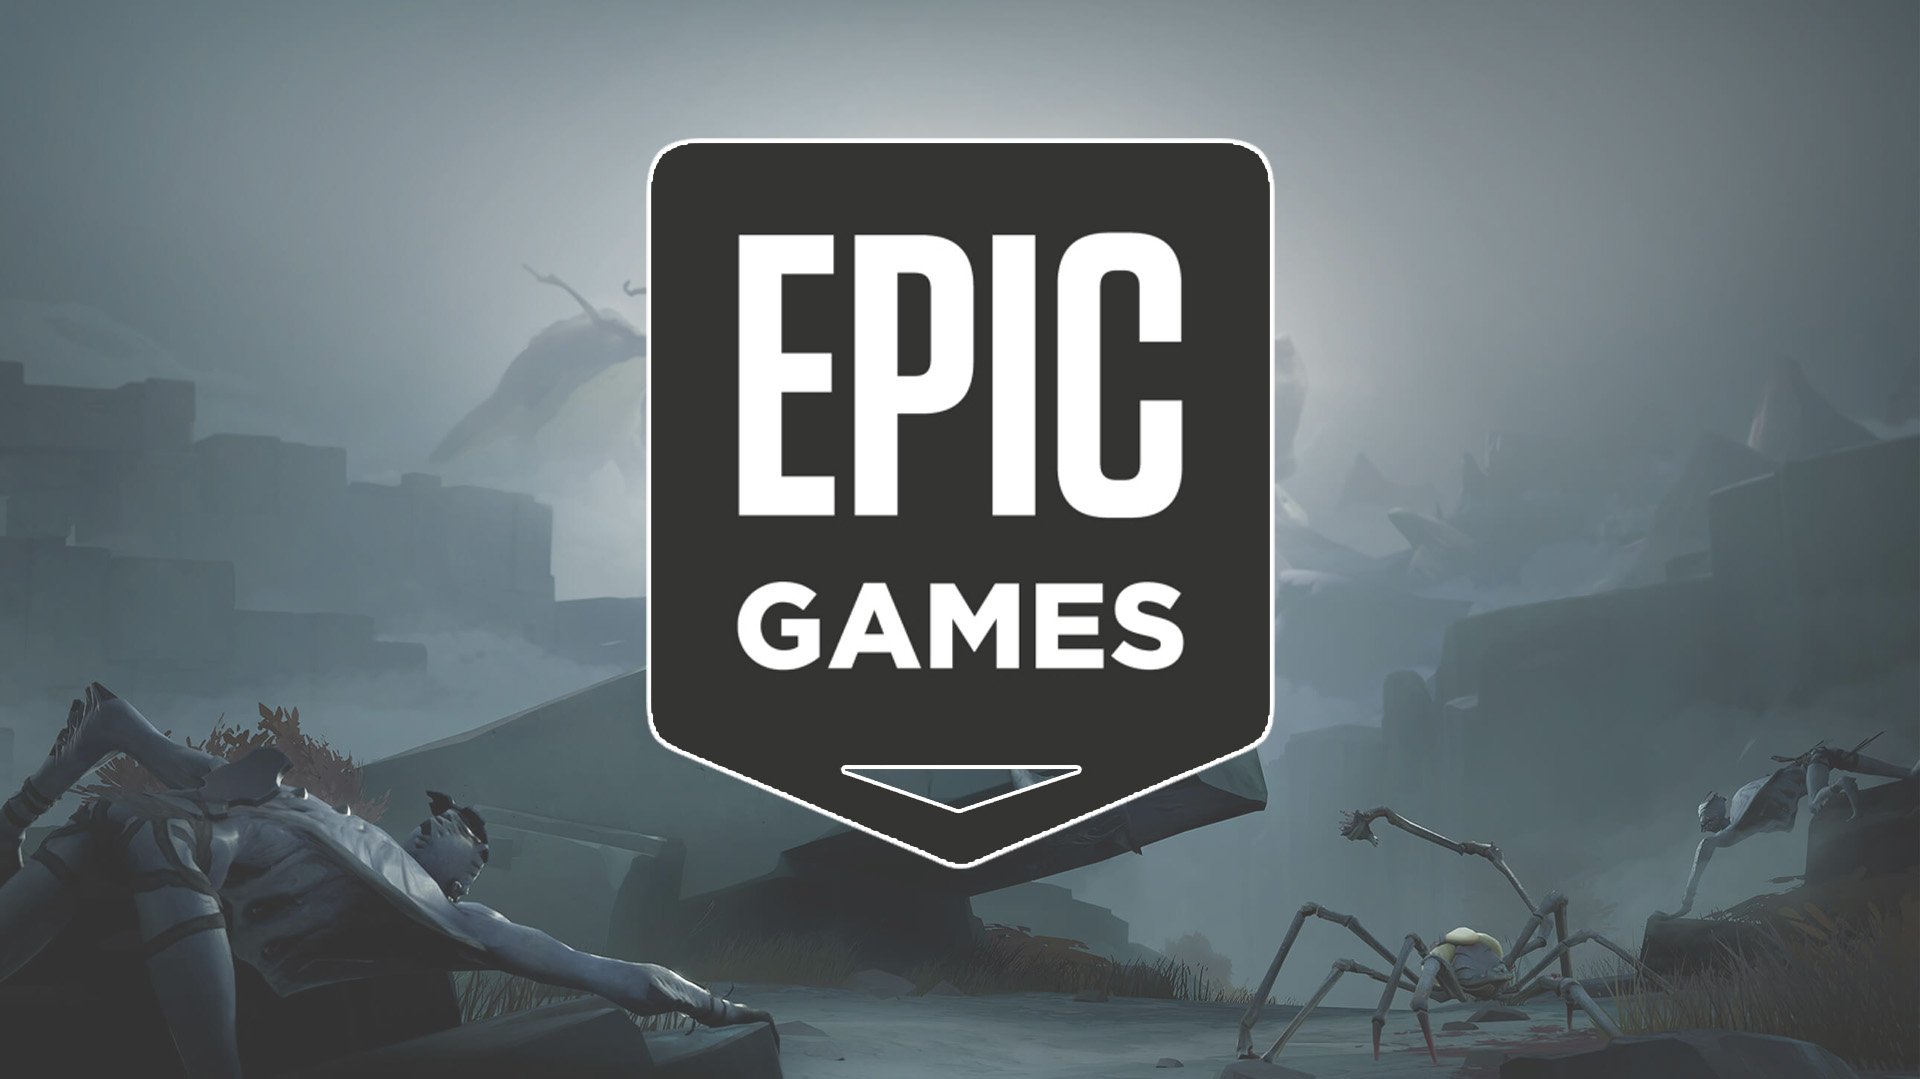 В Epic Games началась новая бесплатная раздача игр